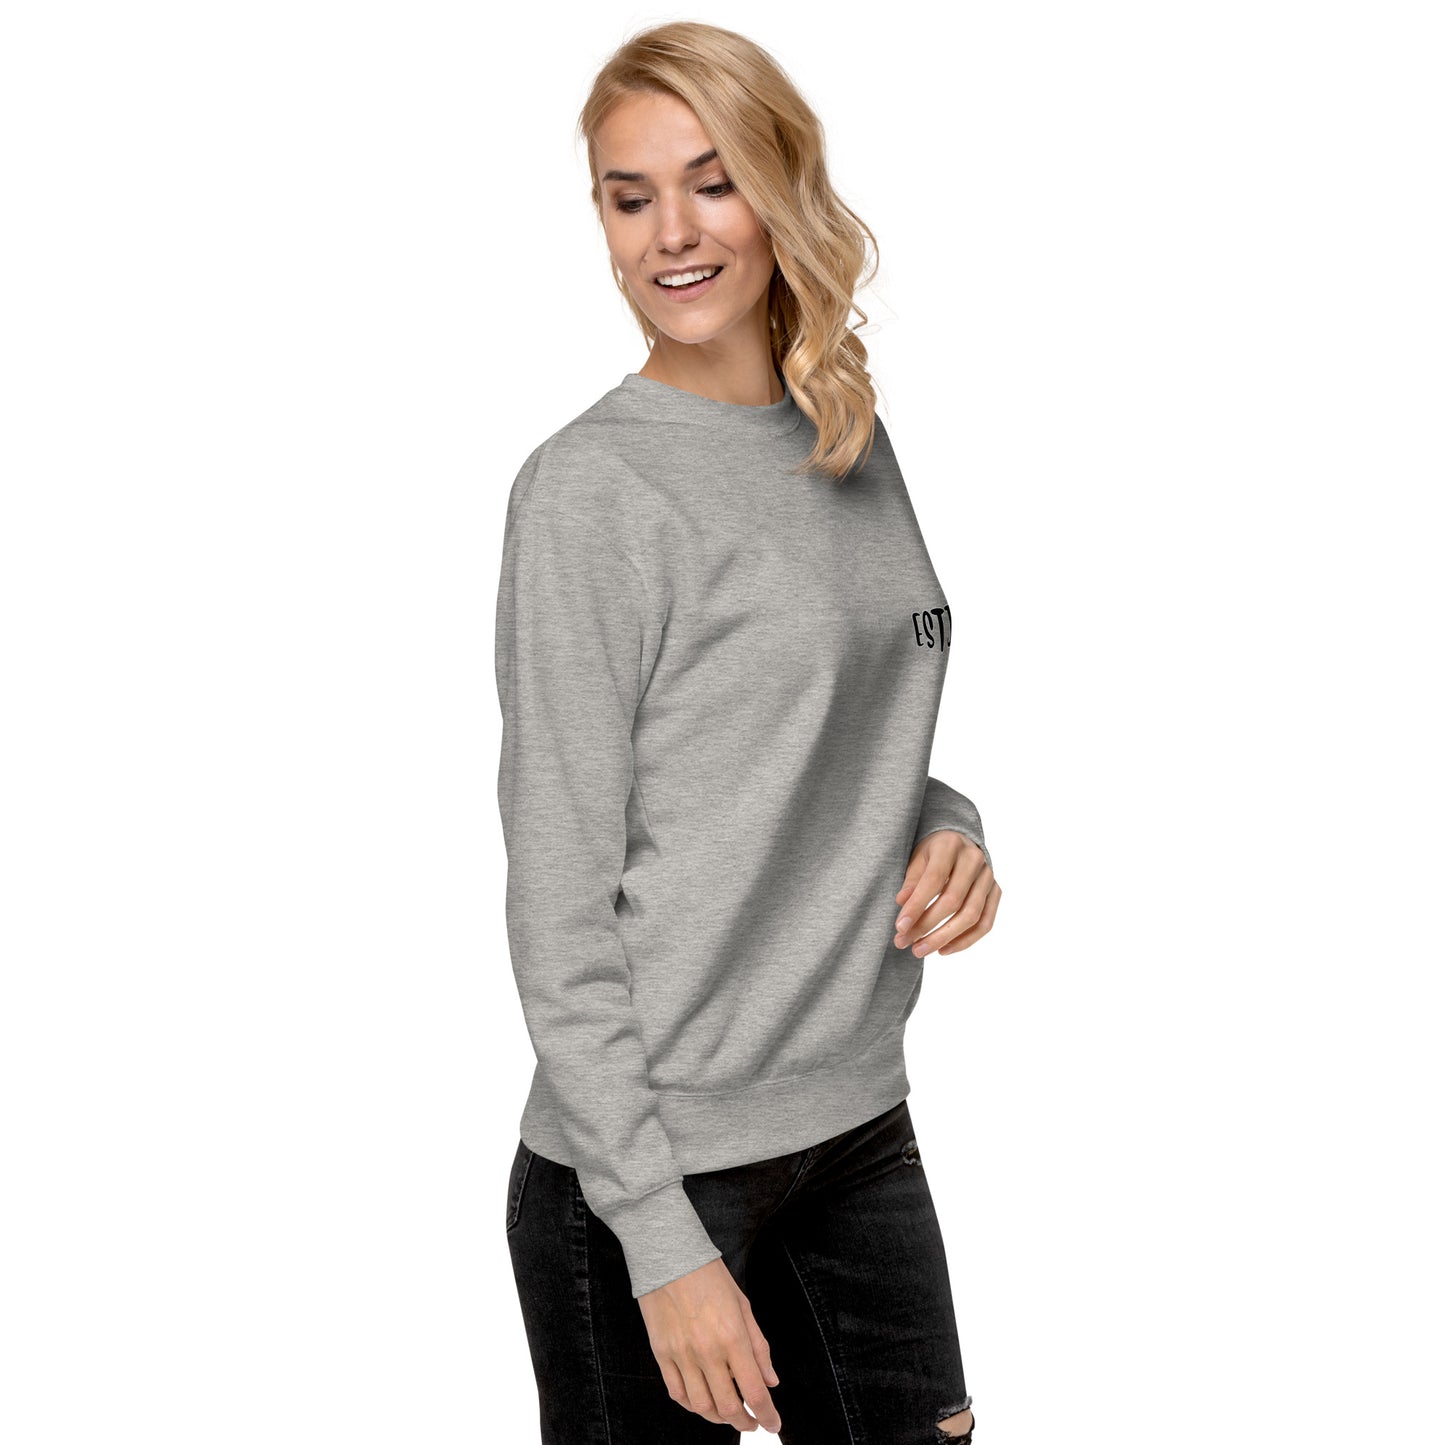 ESTJ MBTI Unisex Premium Sweatshirt